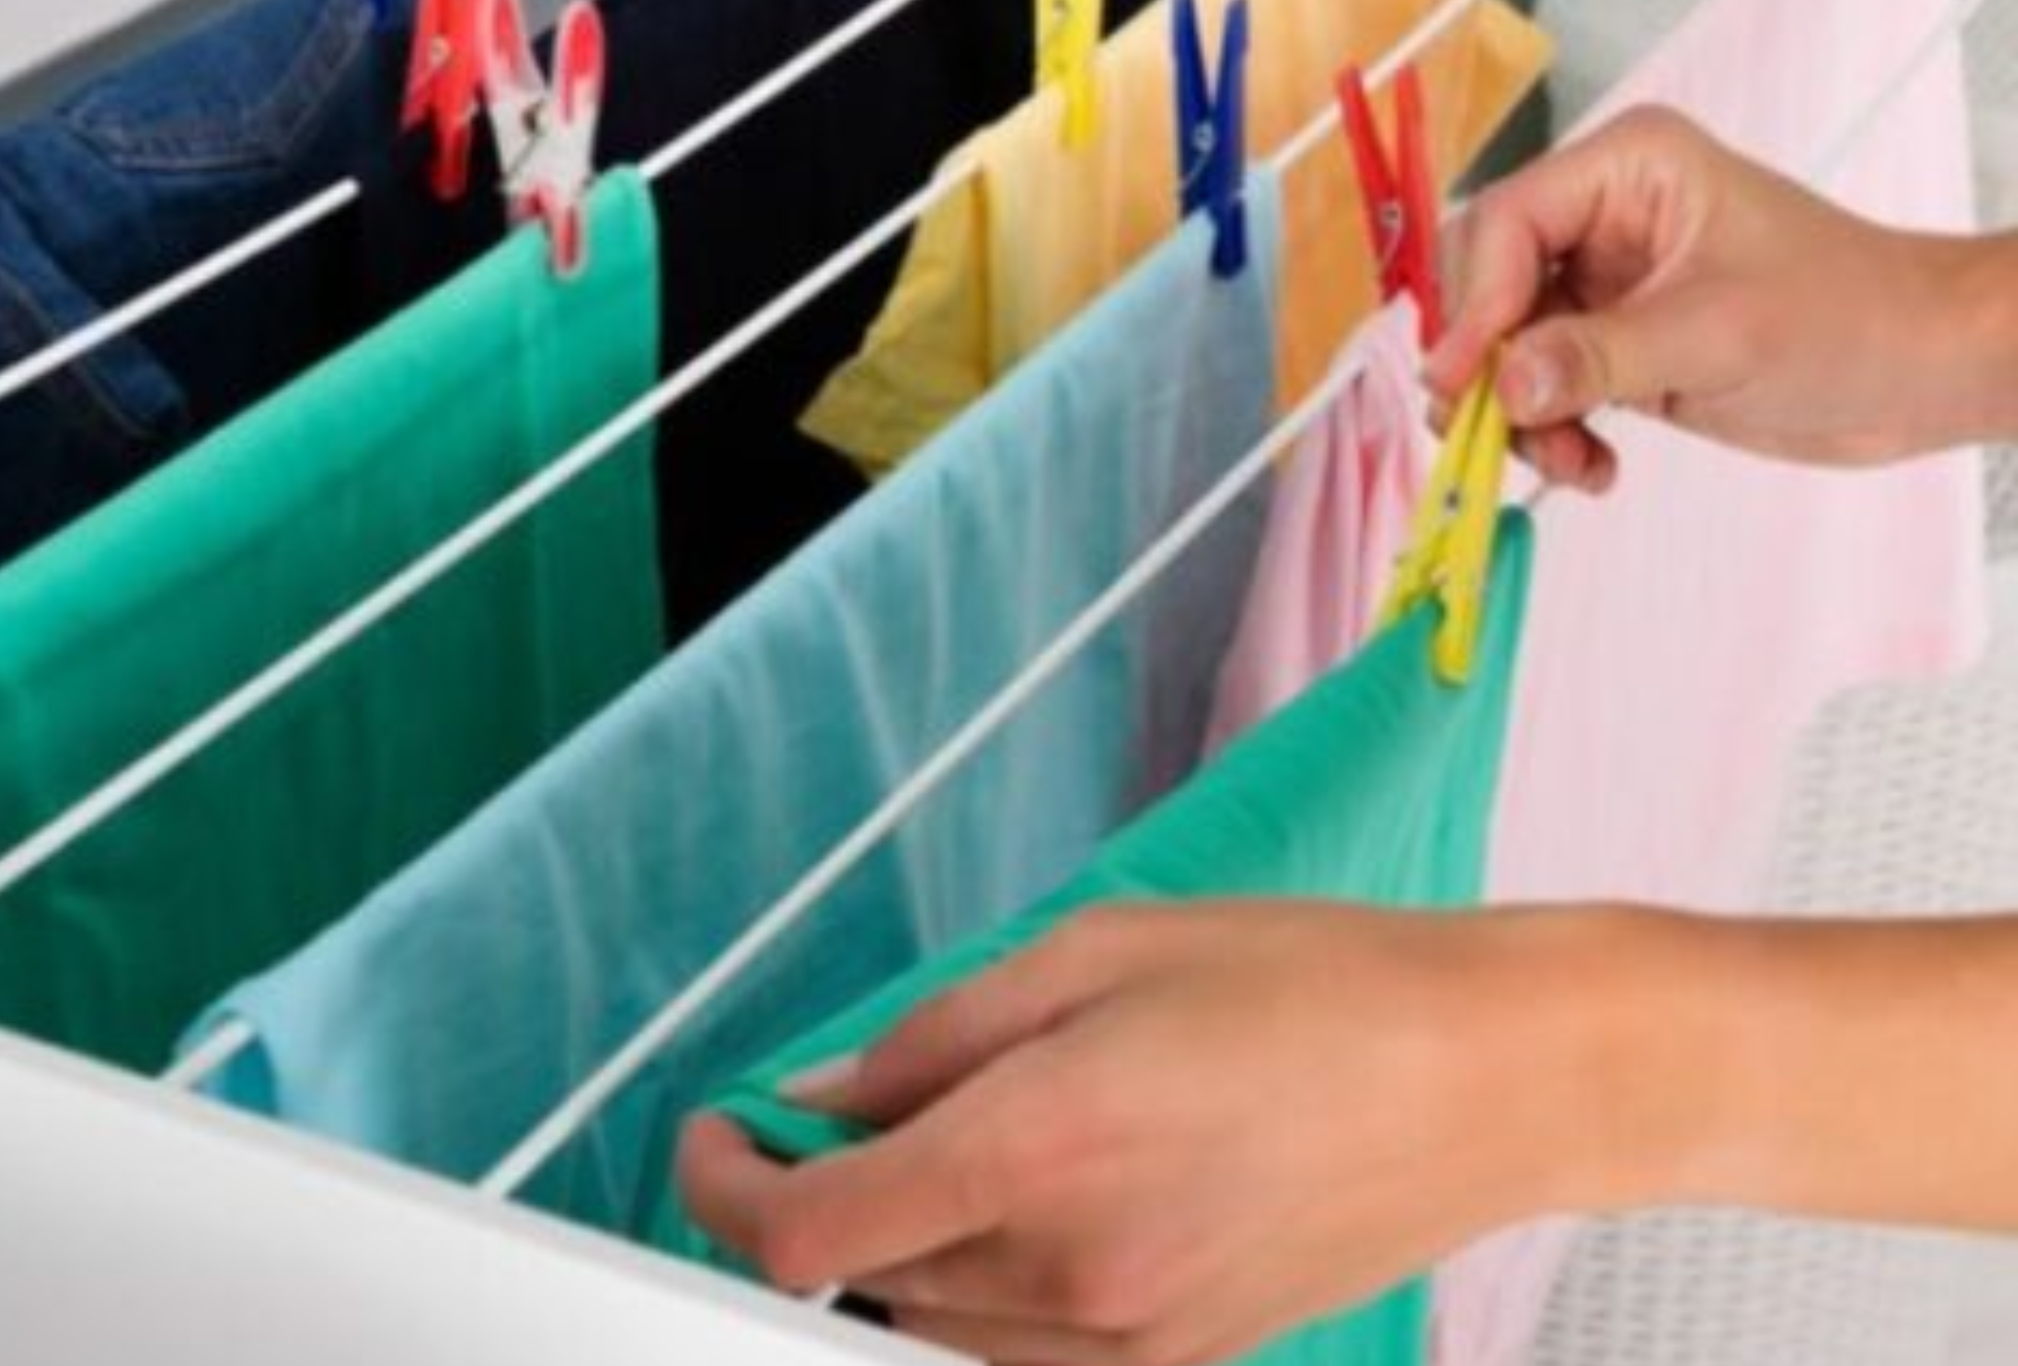 Τσαλακωμένα ρούχα που μυρίζουν και δεν στεγνώνουν με τίποτα: 12 έξυπνα κόλπα για να απλώσετε σωστά τα πλυμένα ρούχα